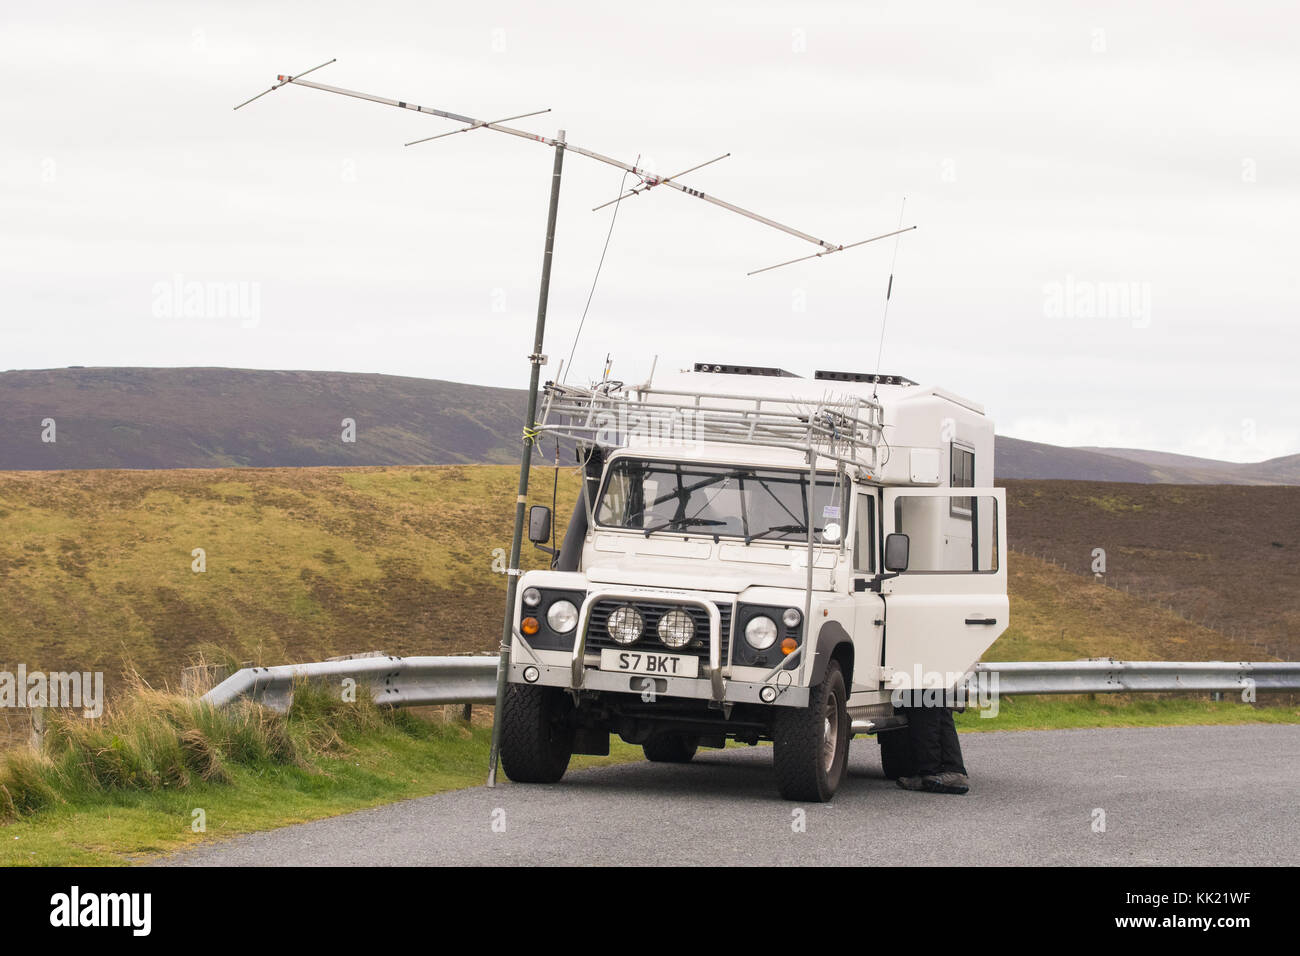 Entusiastas de la radio HAM en una ubicación remota, Islas Shetland, Escocia, Reino Unido Foto de stock